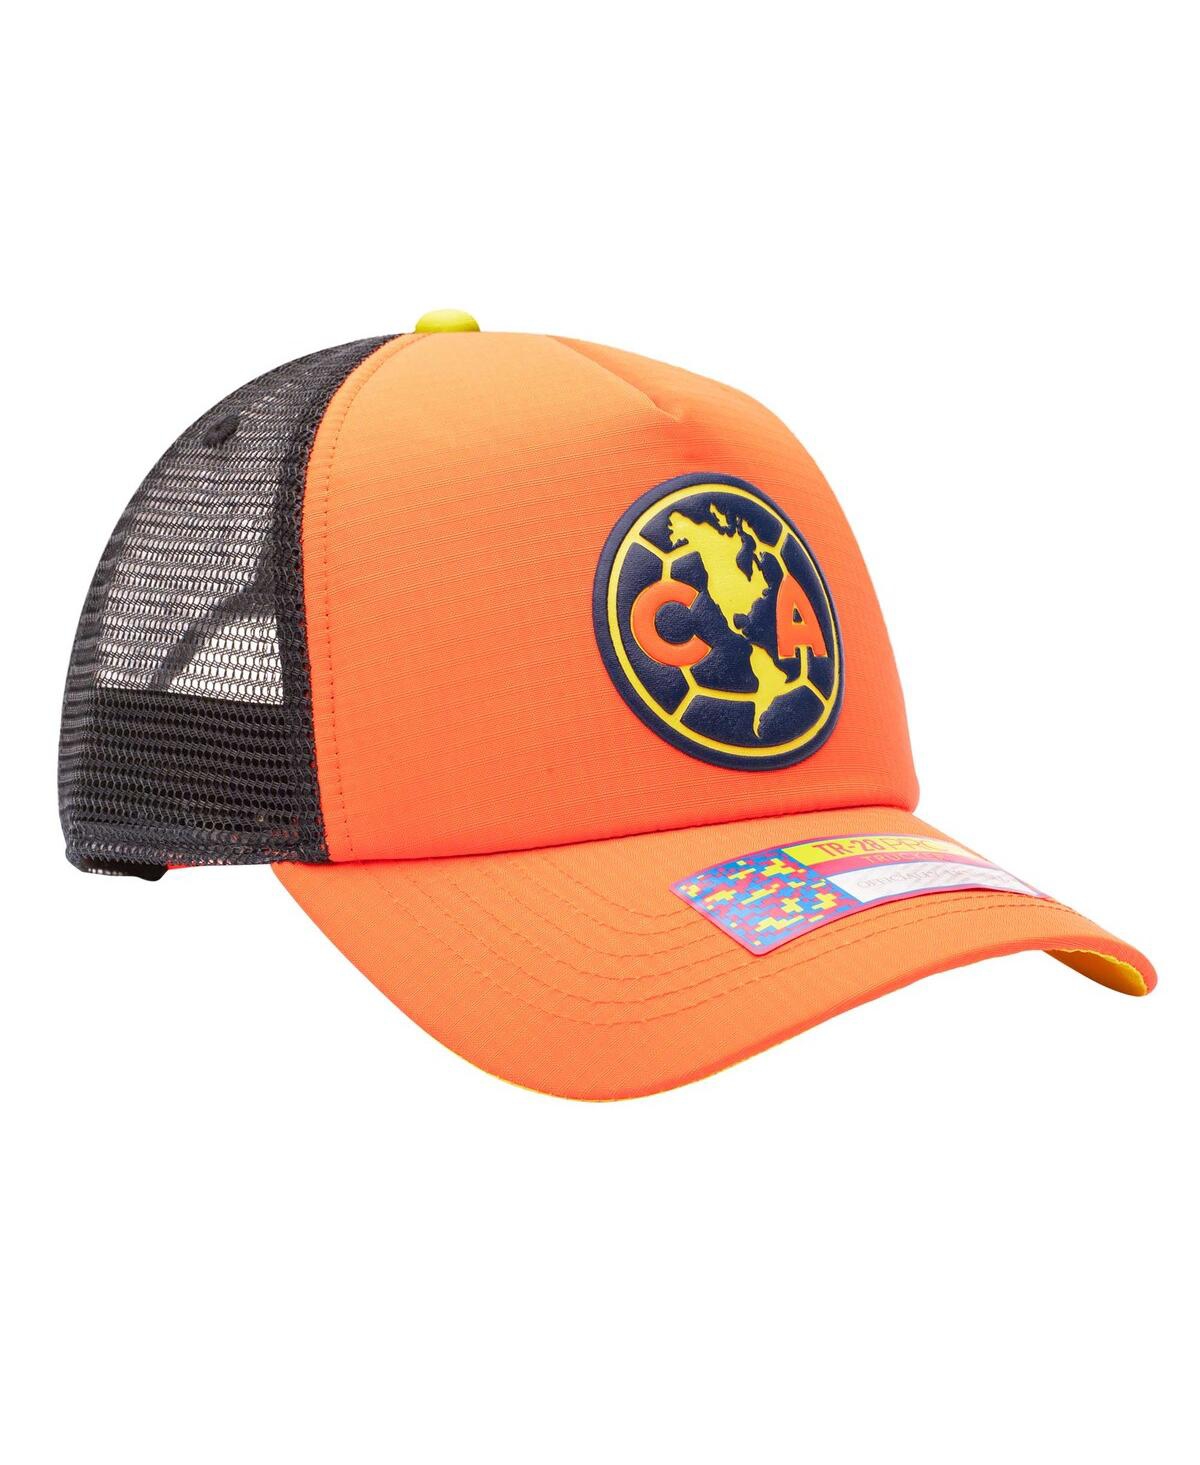 Shop Fan Ink Men's Orange Club America Trucker Adjustable Hat